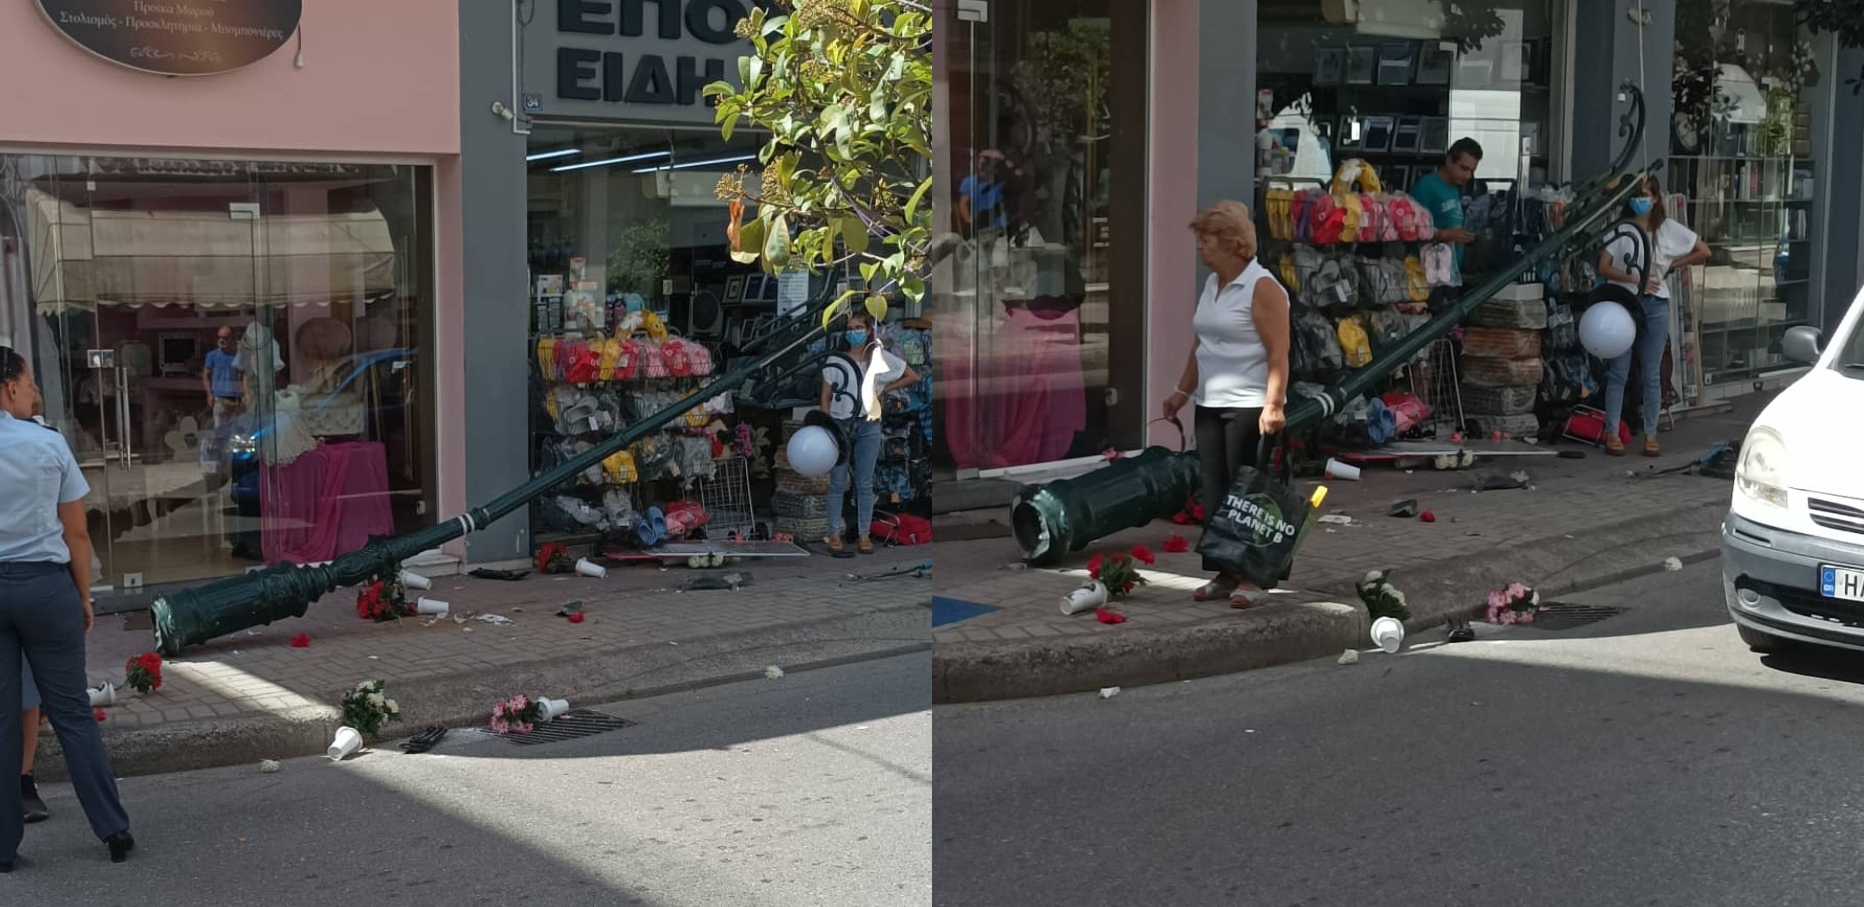 Χαμός στο κέντρο του Πύργου: Ανήλικη πήρε το ΙΧ των γονιών – Τραυμάτισε περαστικό και χτύπησε οχήματα